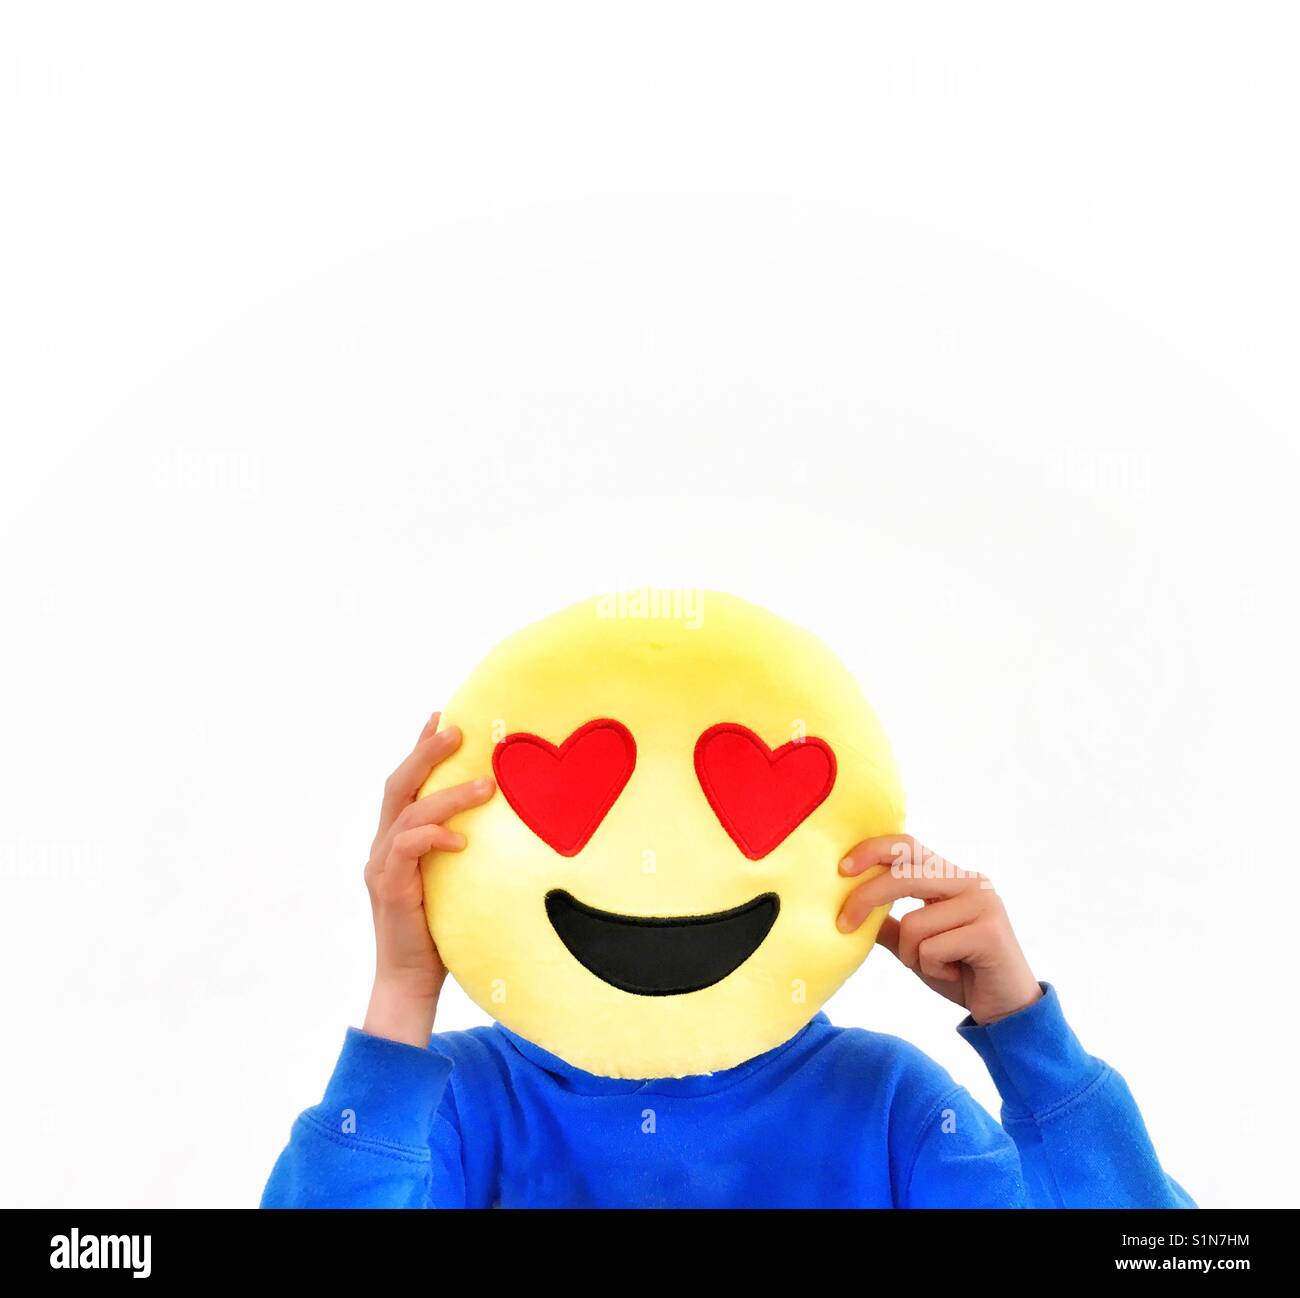 Emoji Máscaras Adultos Niños sonriente cara iconos Máscara Cabina de diversión sesión fotográfica Utilería Lote Reino Unido 